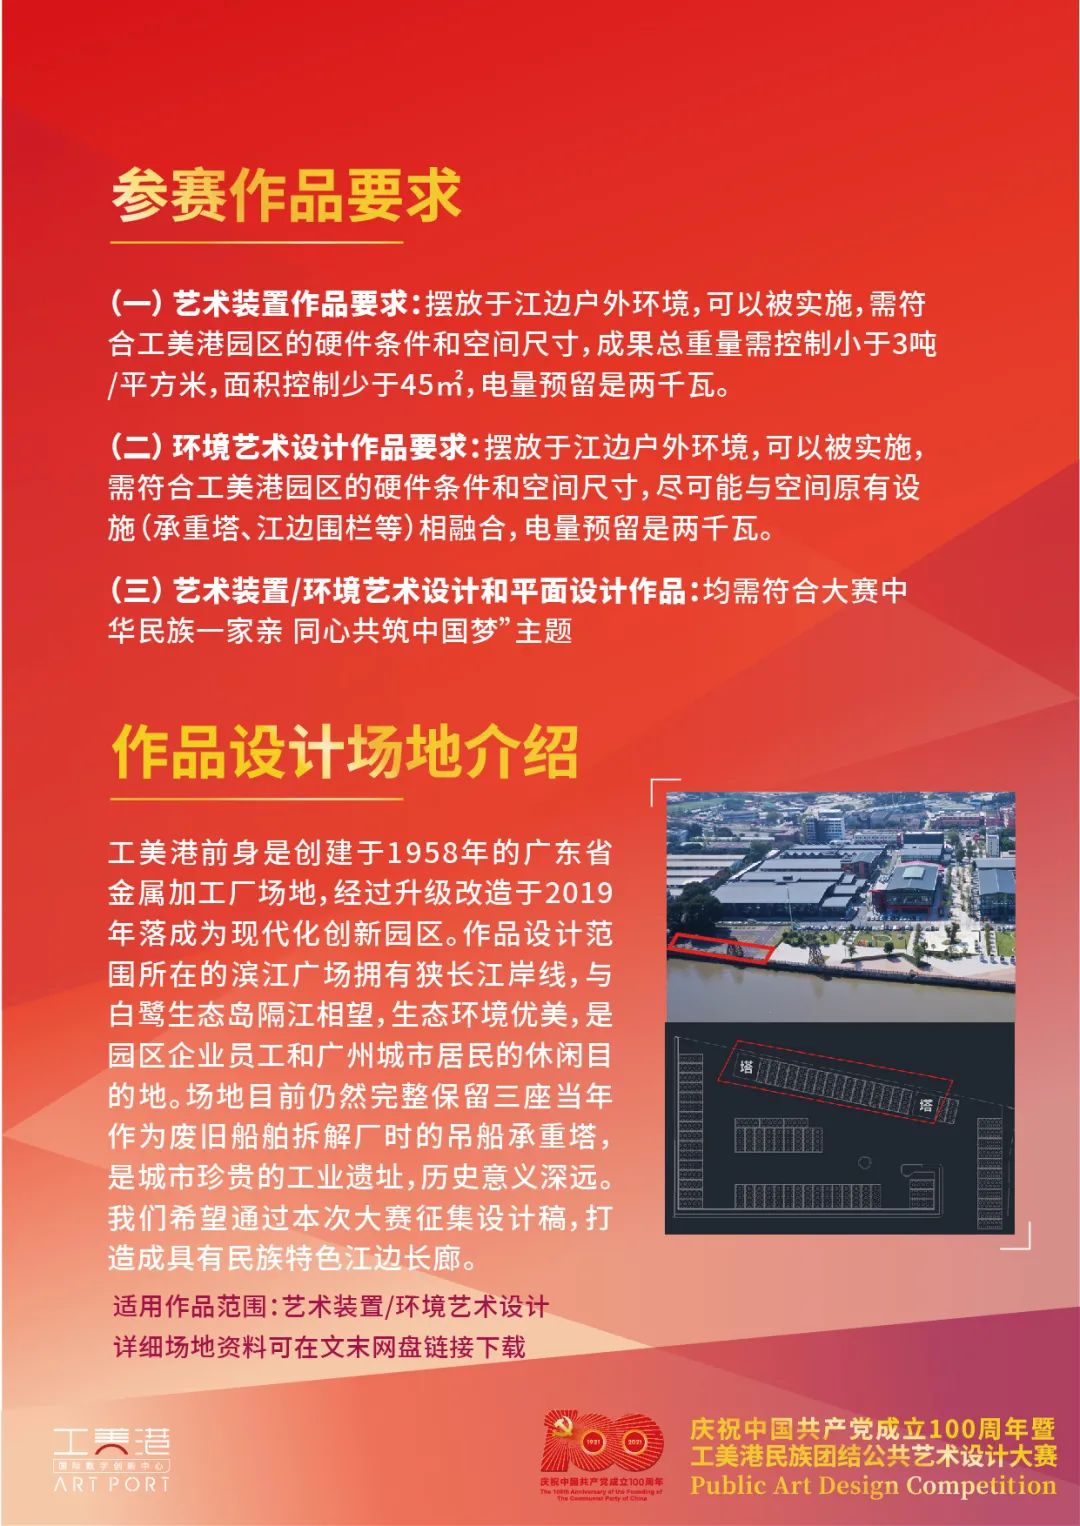 2021慶祝中國共產黨成立100週年暨工美港民族團結公共藝術設計大賽